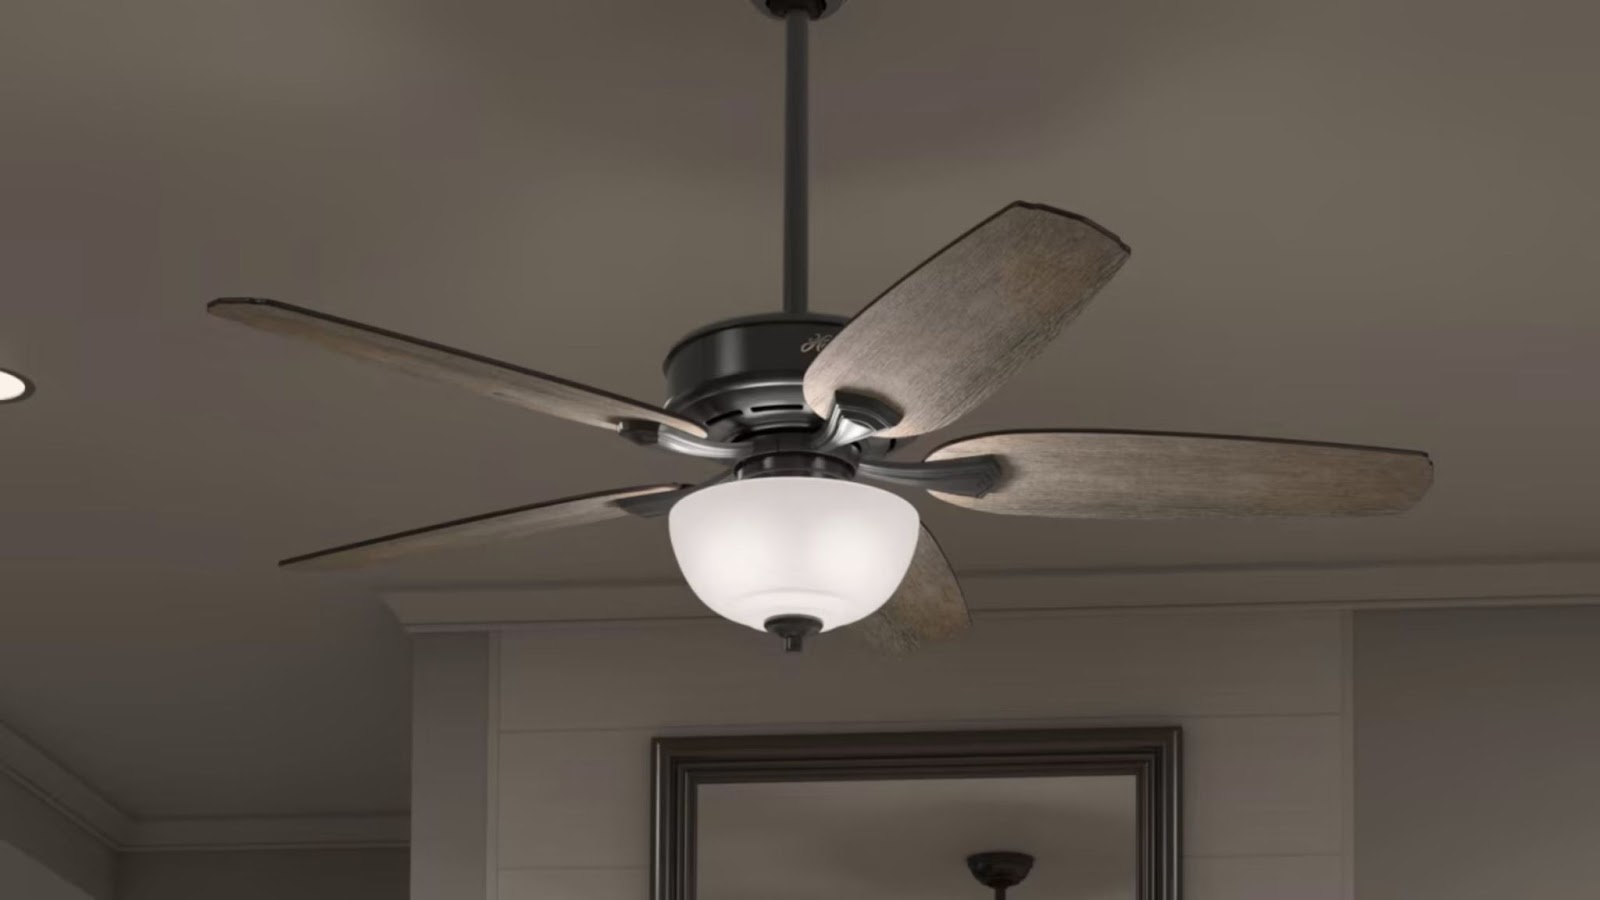 Smart Ceiling Fan With Light